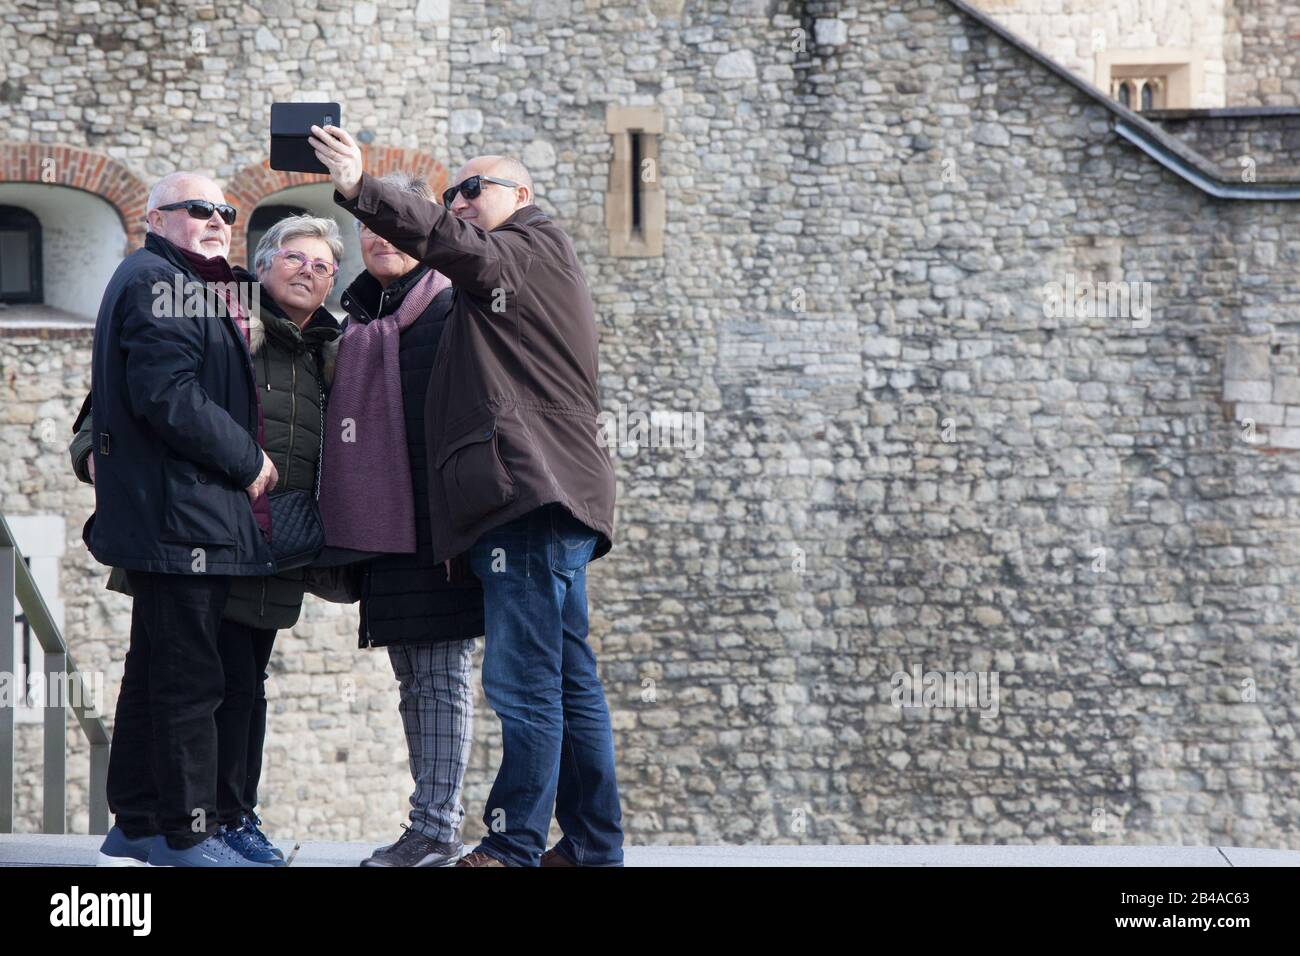 Londres, Royaume-Uni. 6 mars 2020. Les touristes ont profité d'une journée ensoleillée pour visiter la Tour de Londres sans porter de masques, montrant une attitude "comme d'habitude" à l'égard du Corvid-19 coronavirus. Anna Watson/Alay Live News Banque D'Images